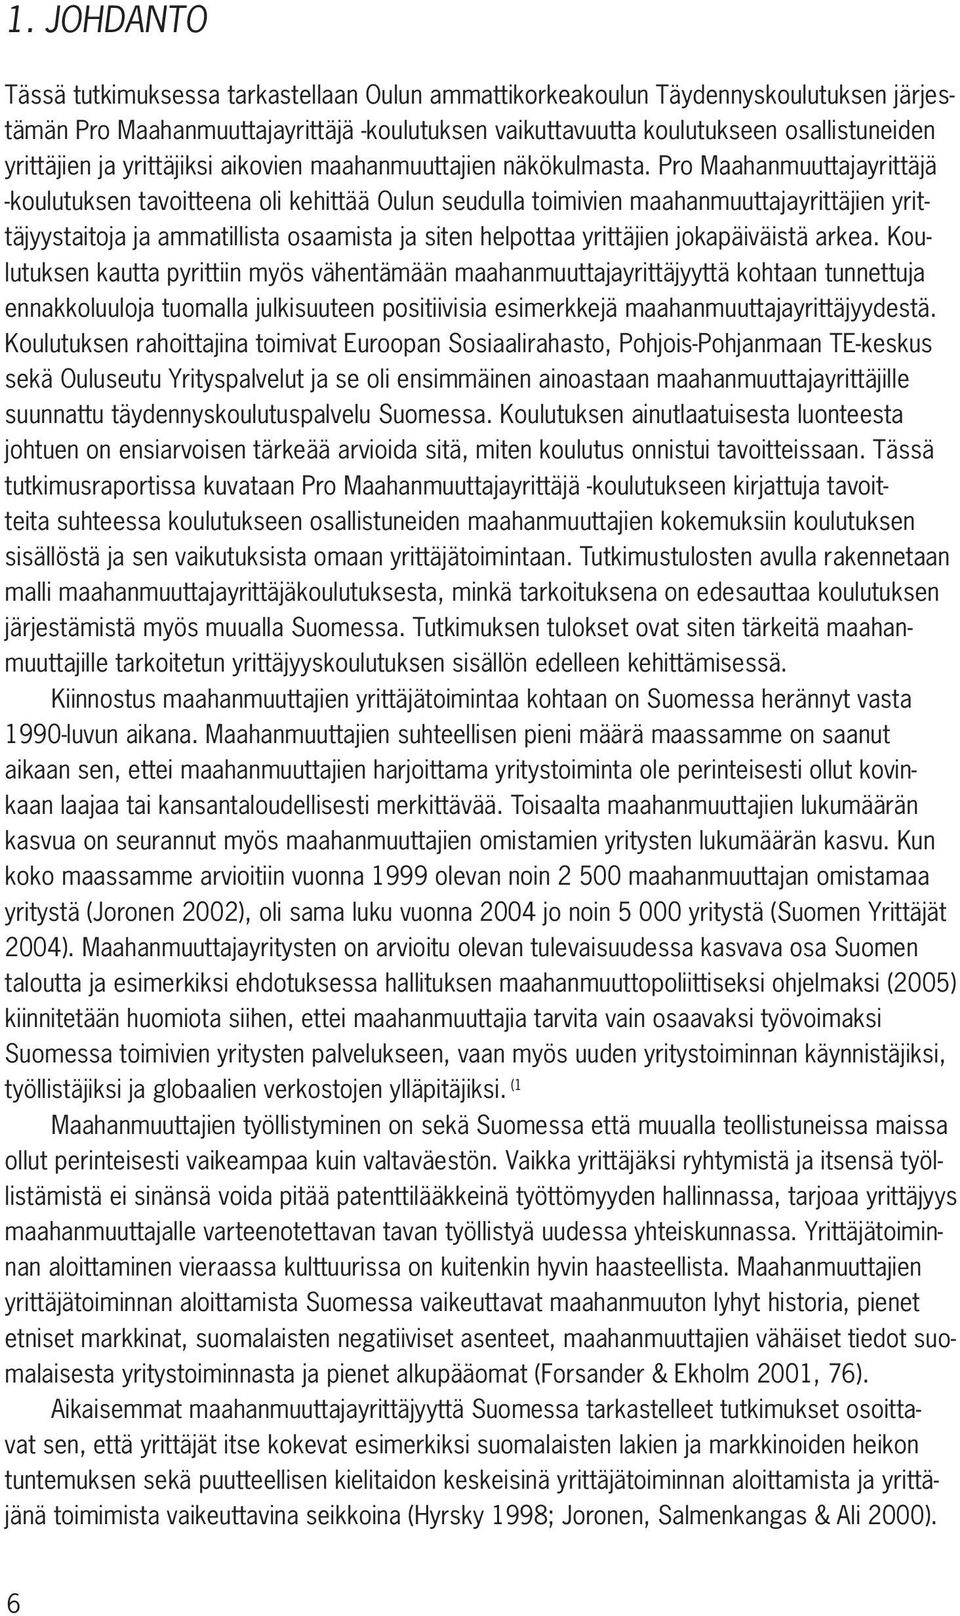 Pro Maahanmuuttajayrittäjä -koulutuksen tavoitteena oli kehittää Oulun seudulla toimivien maahanmuuttajayrittäjien yrittäjyystaitoja ja ammatillista osaamista ja siten helpottaa yrittäjien